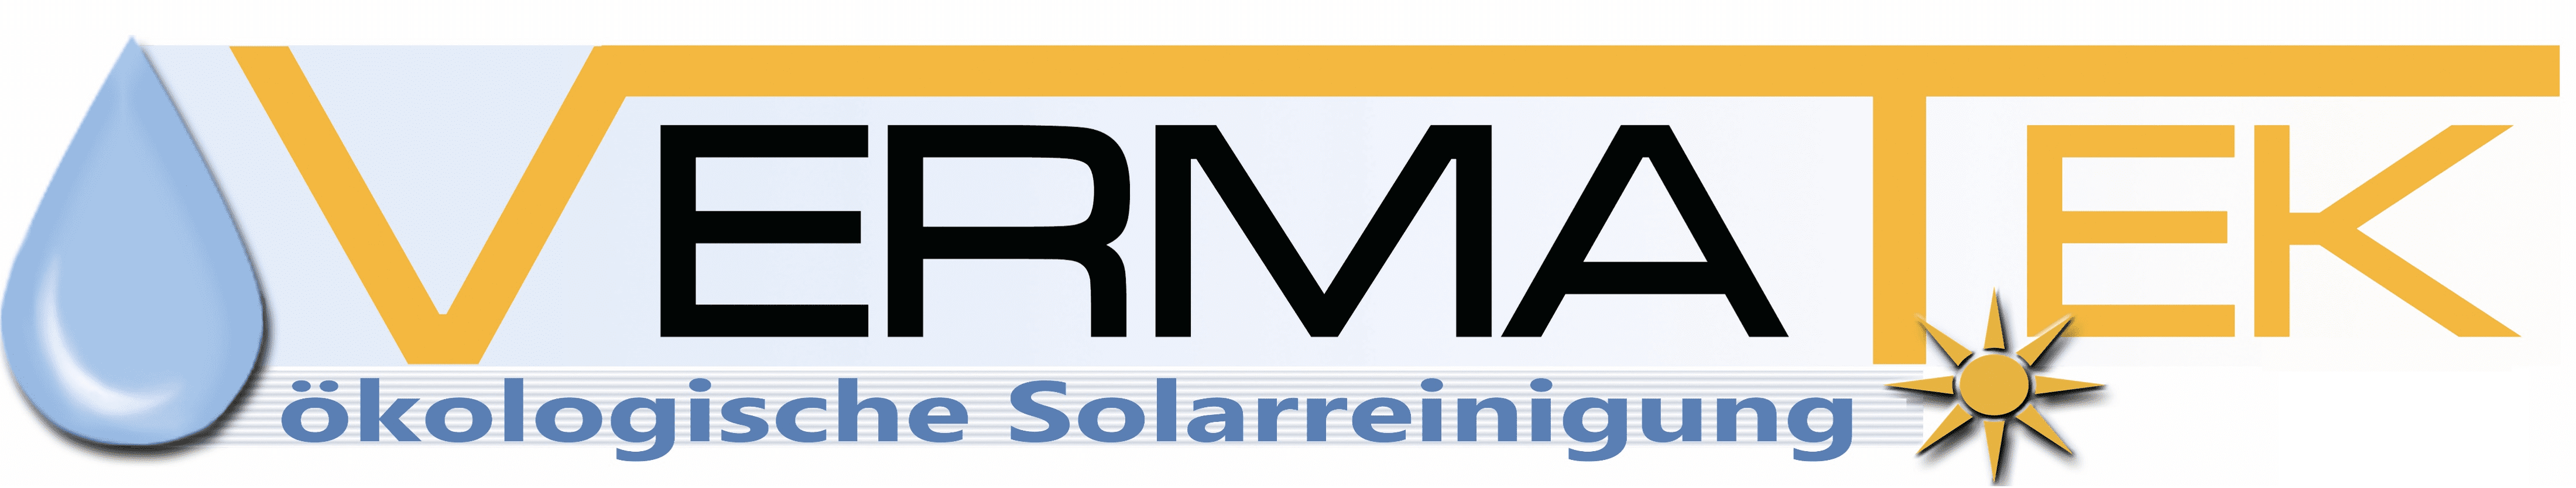 Vermatek - Solarreinigung - Solaranlagenreinigung - Solarparks